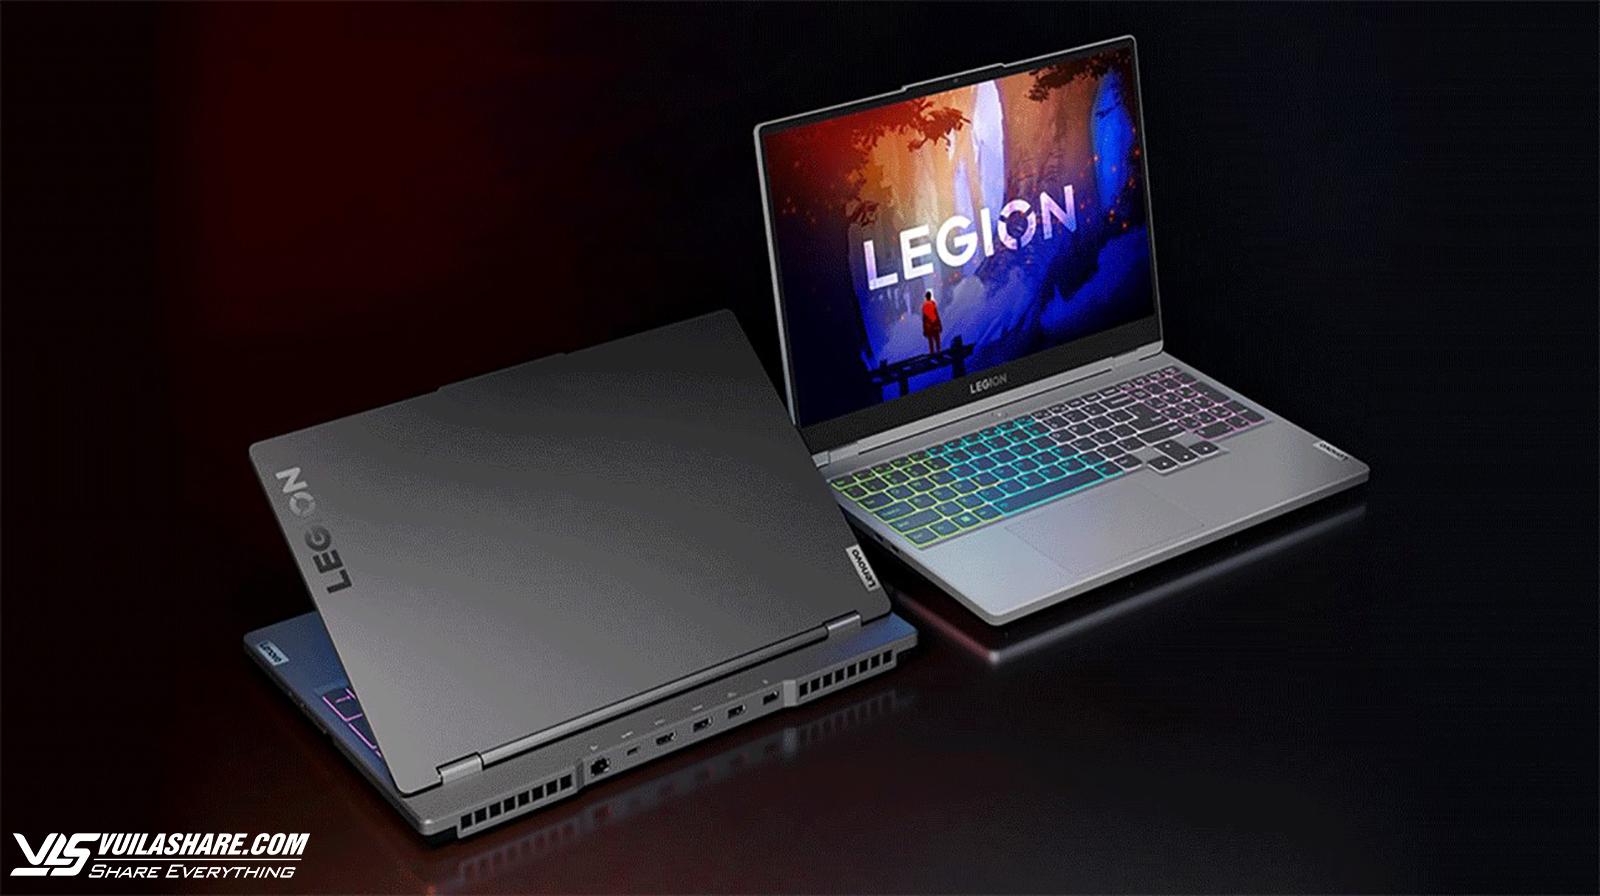 Laptop Lenovo Legion 5 hiện giảm từ 37.990.000 đồng xuống còn 22.990.000 đồng trên Shopee